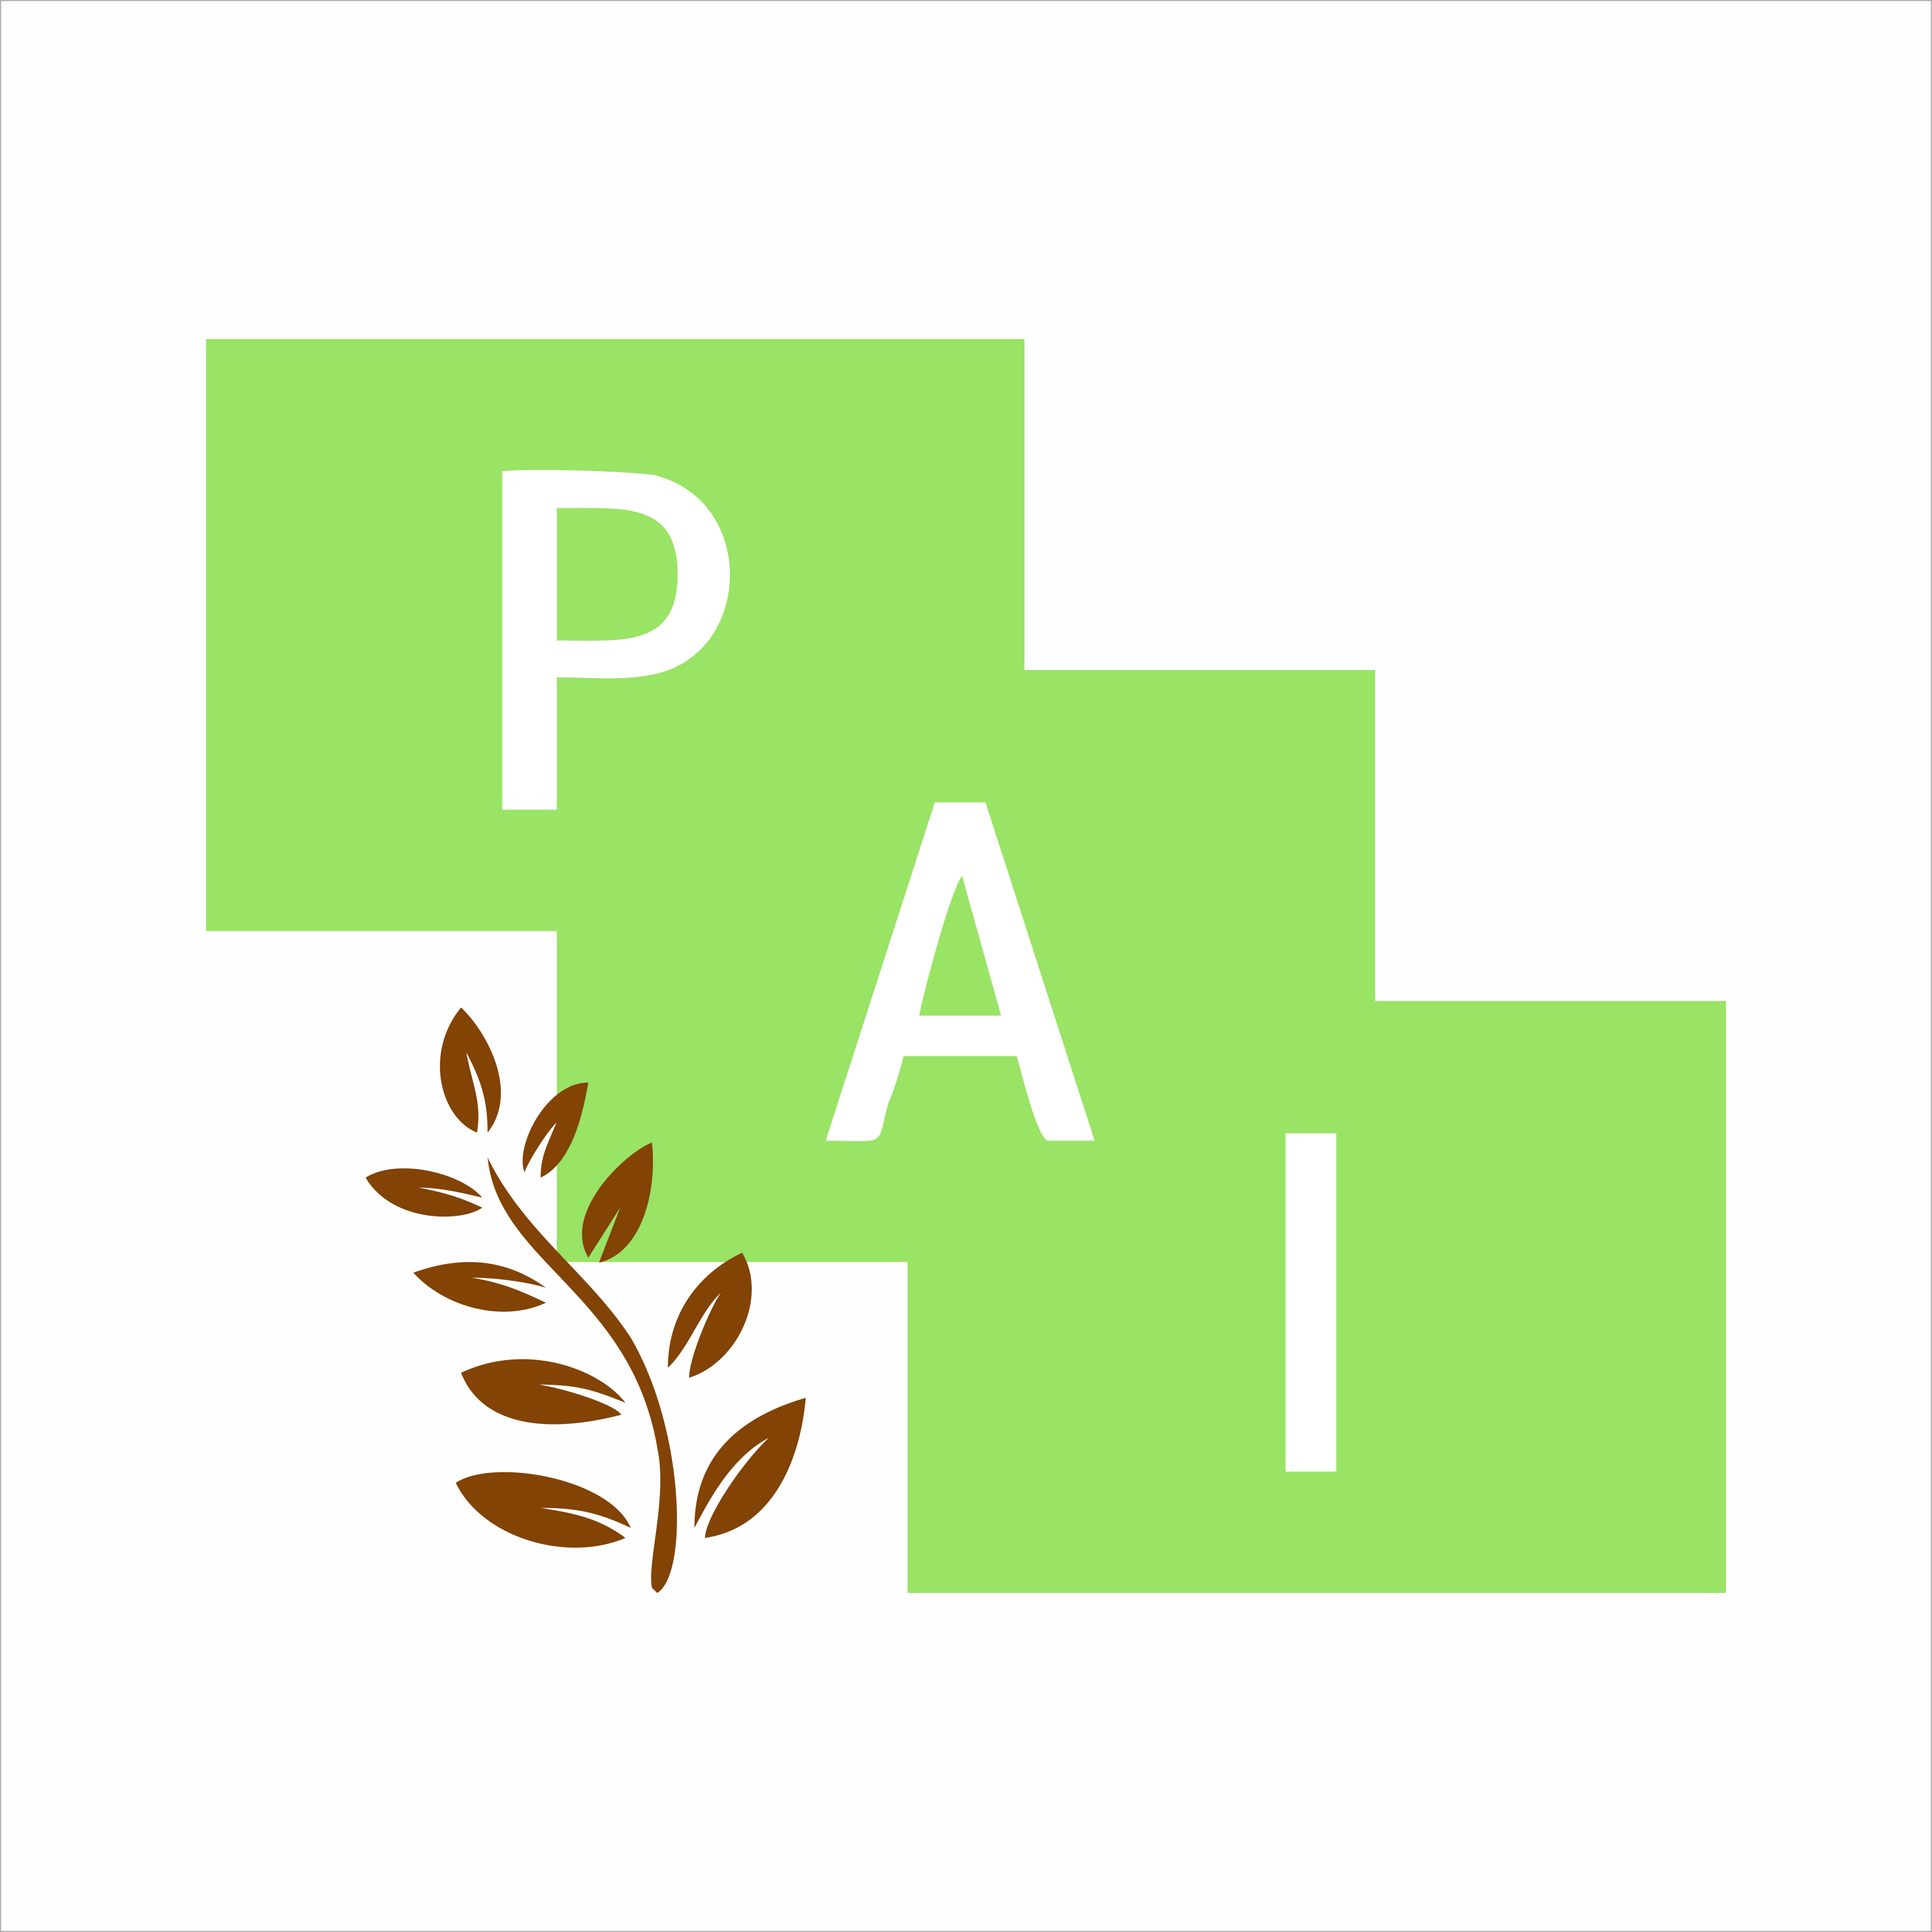 Pandawa Agri Indonesia